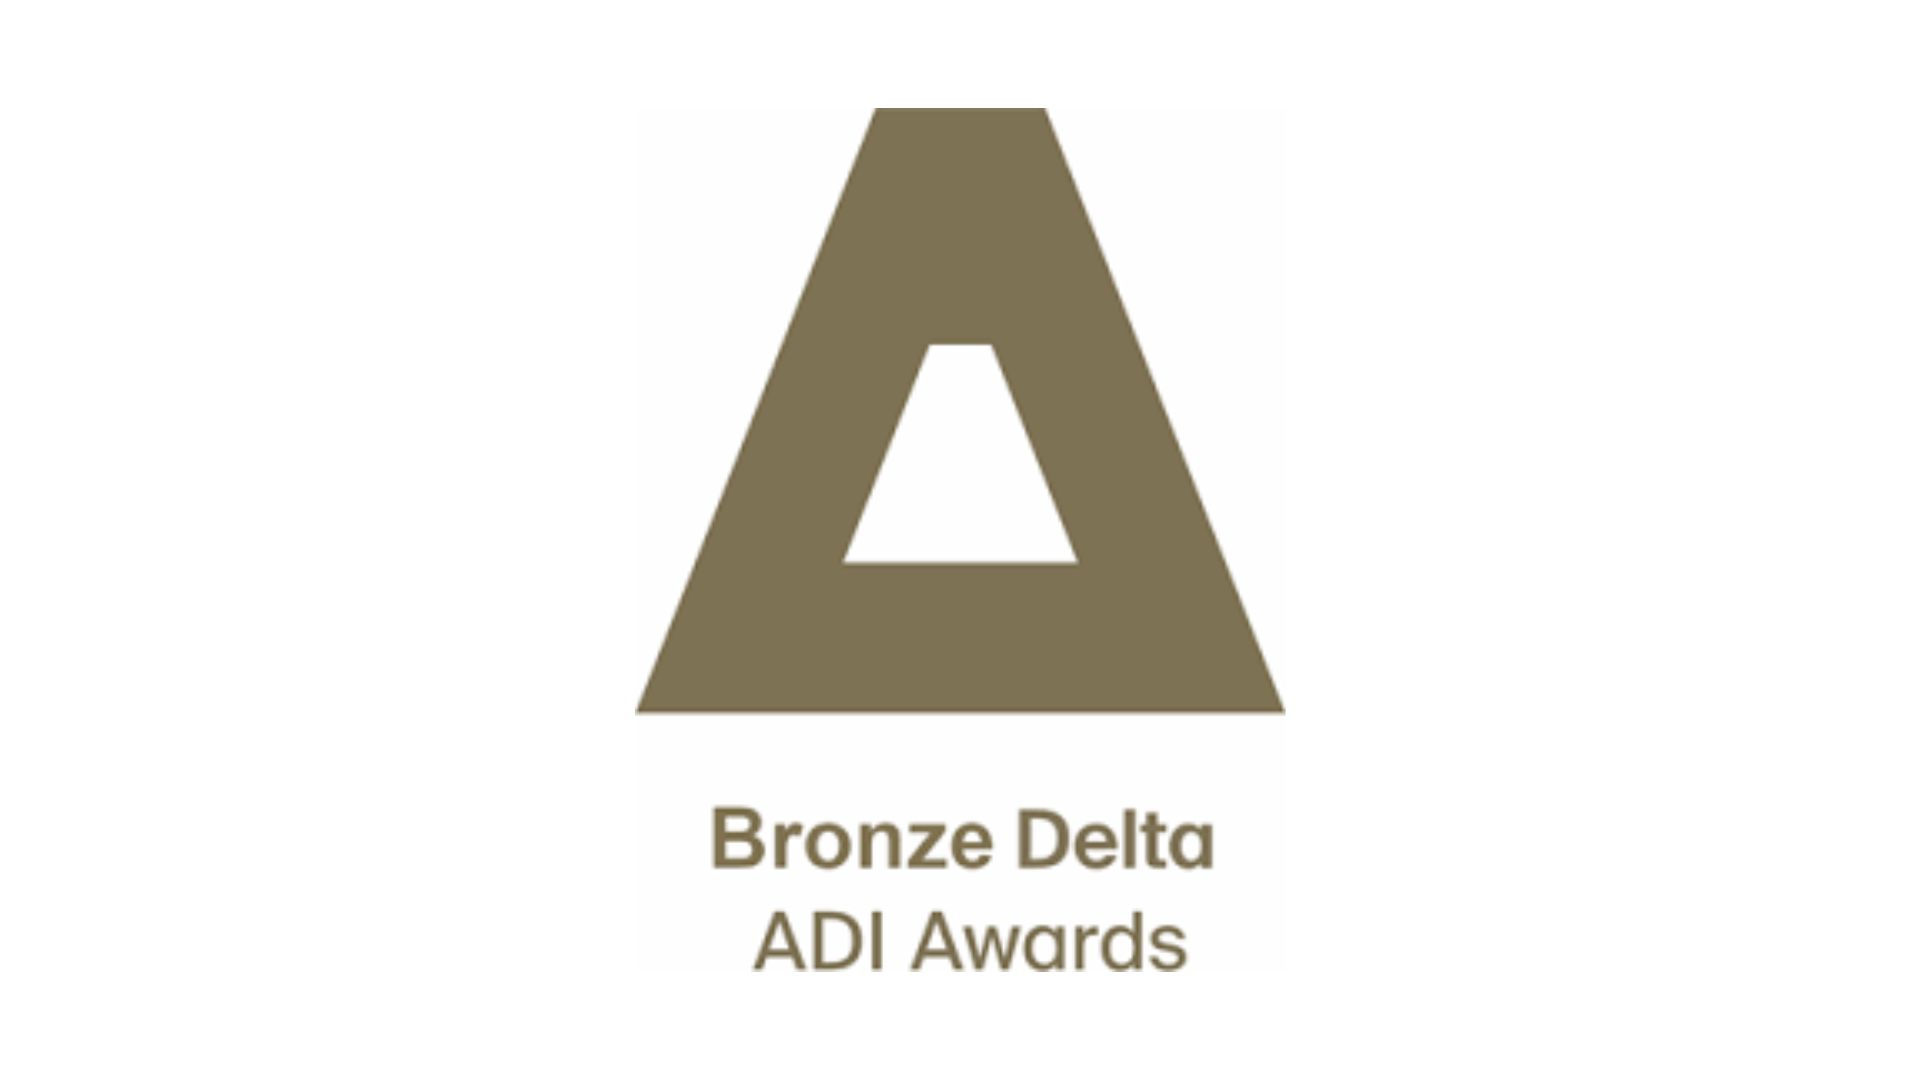 Premio di bronzo Delta Adi per il nuovo monitor retrattile DB3!